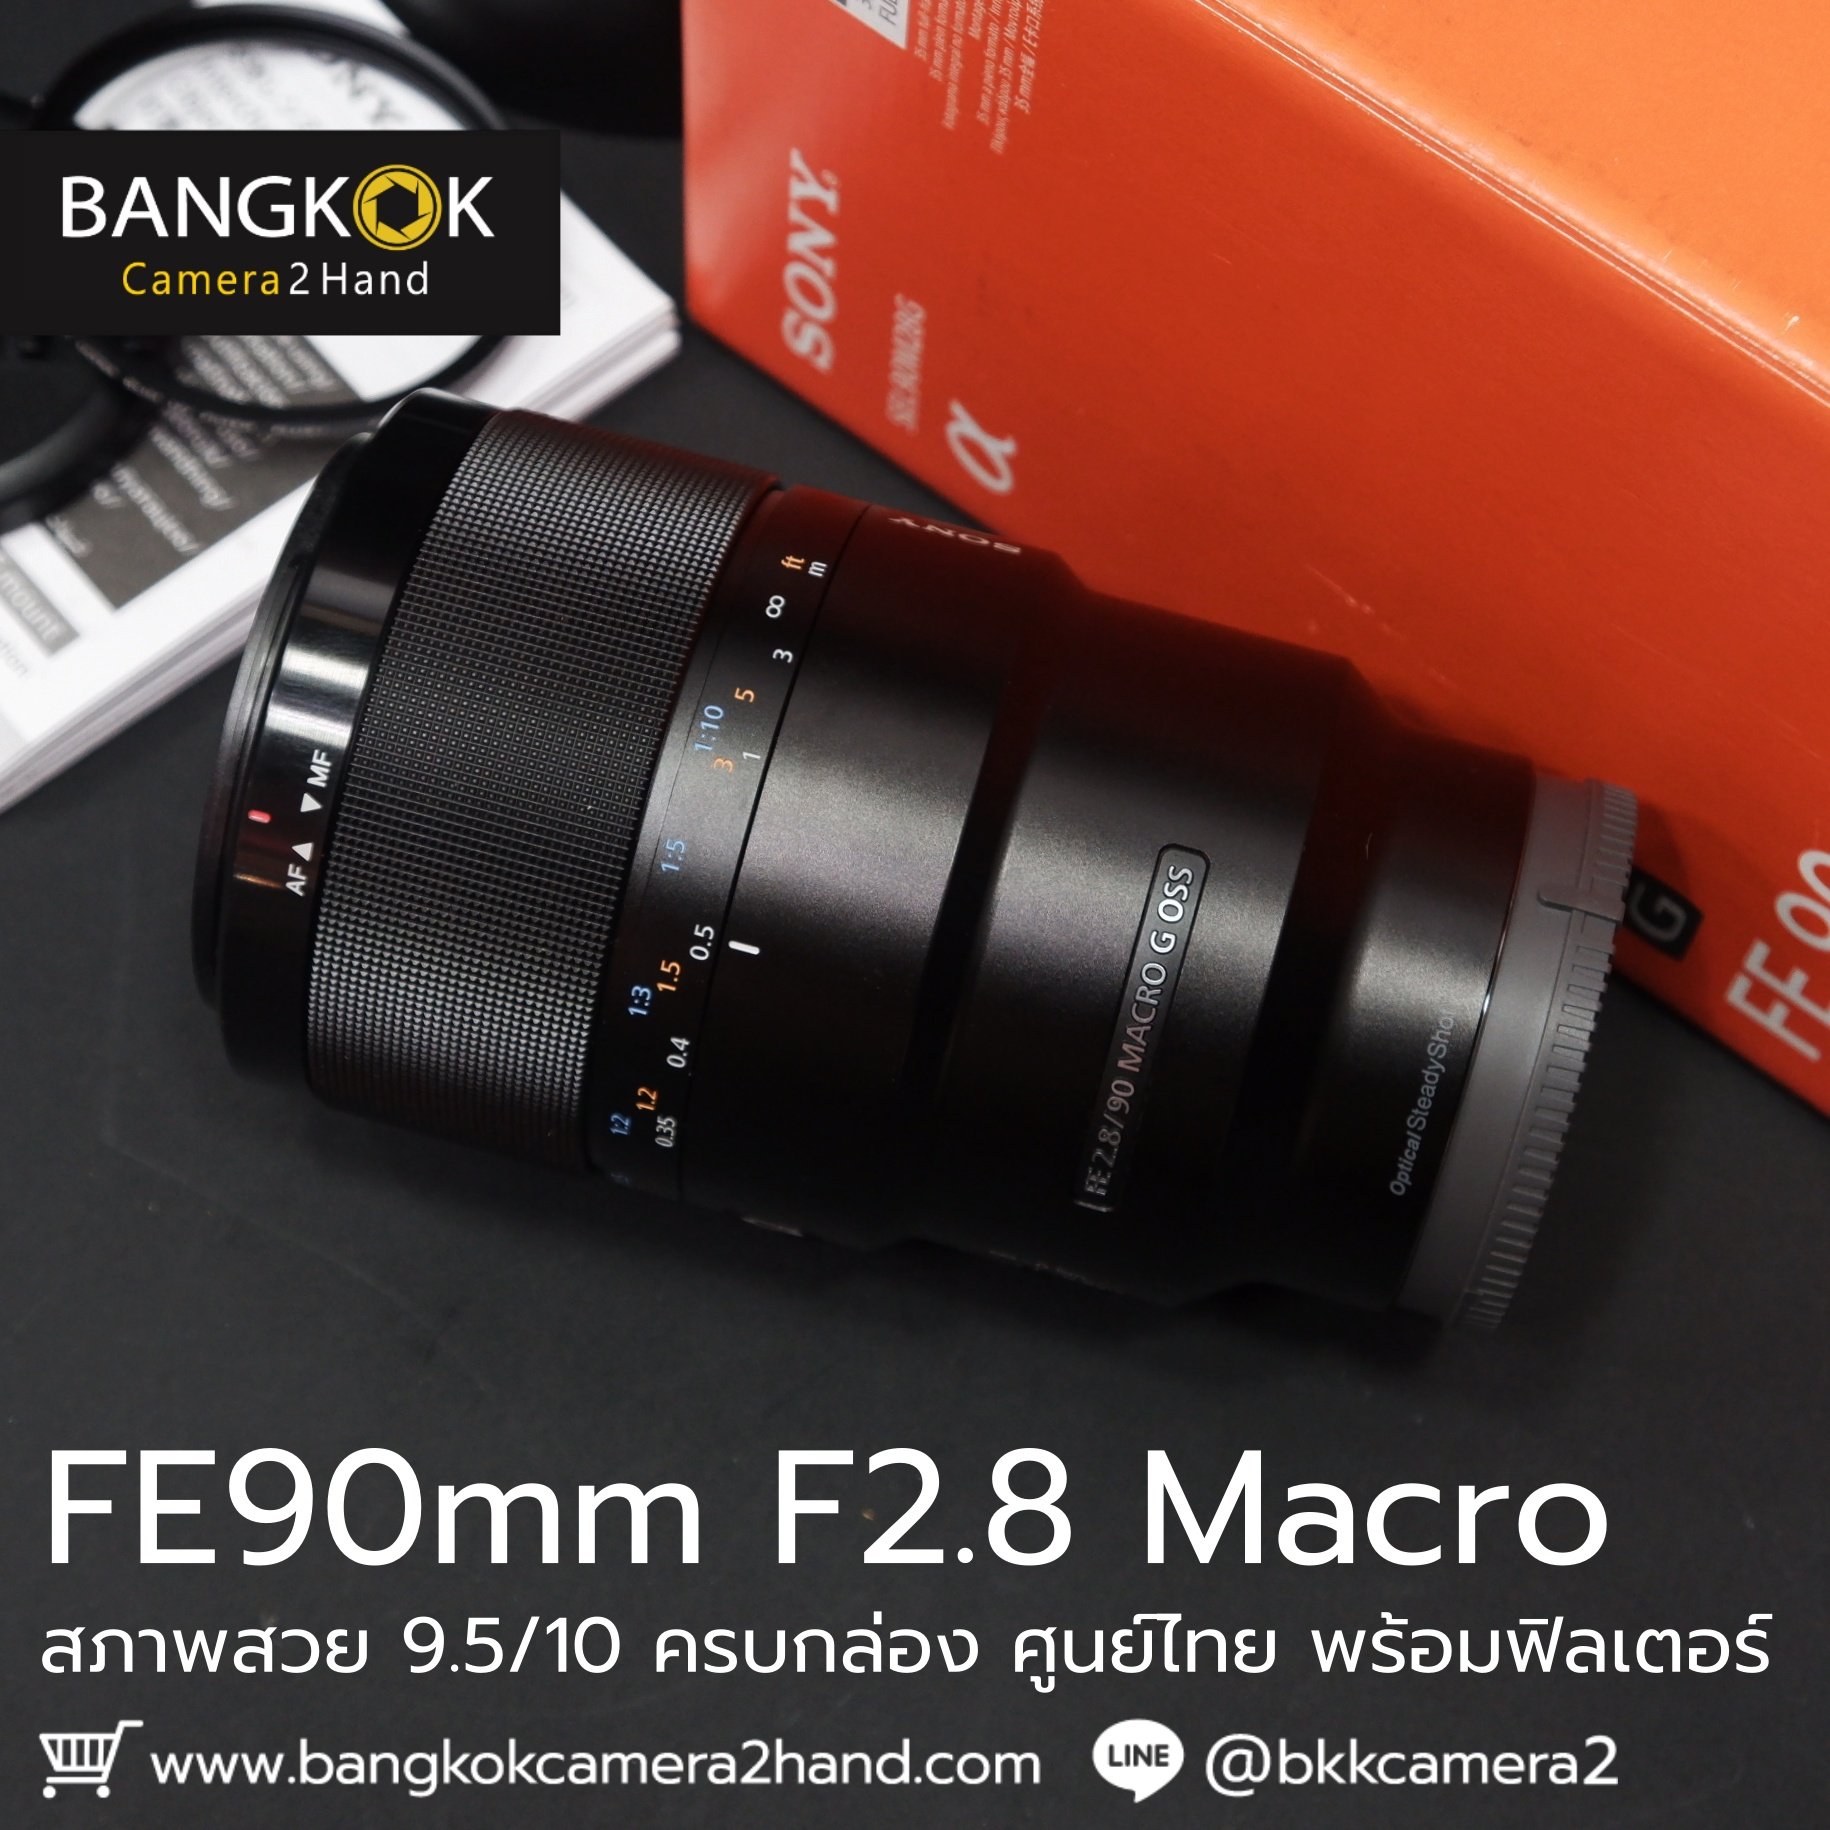 FE90mm F2.8 Macro พร้อมฟิลเตอร์